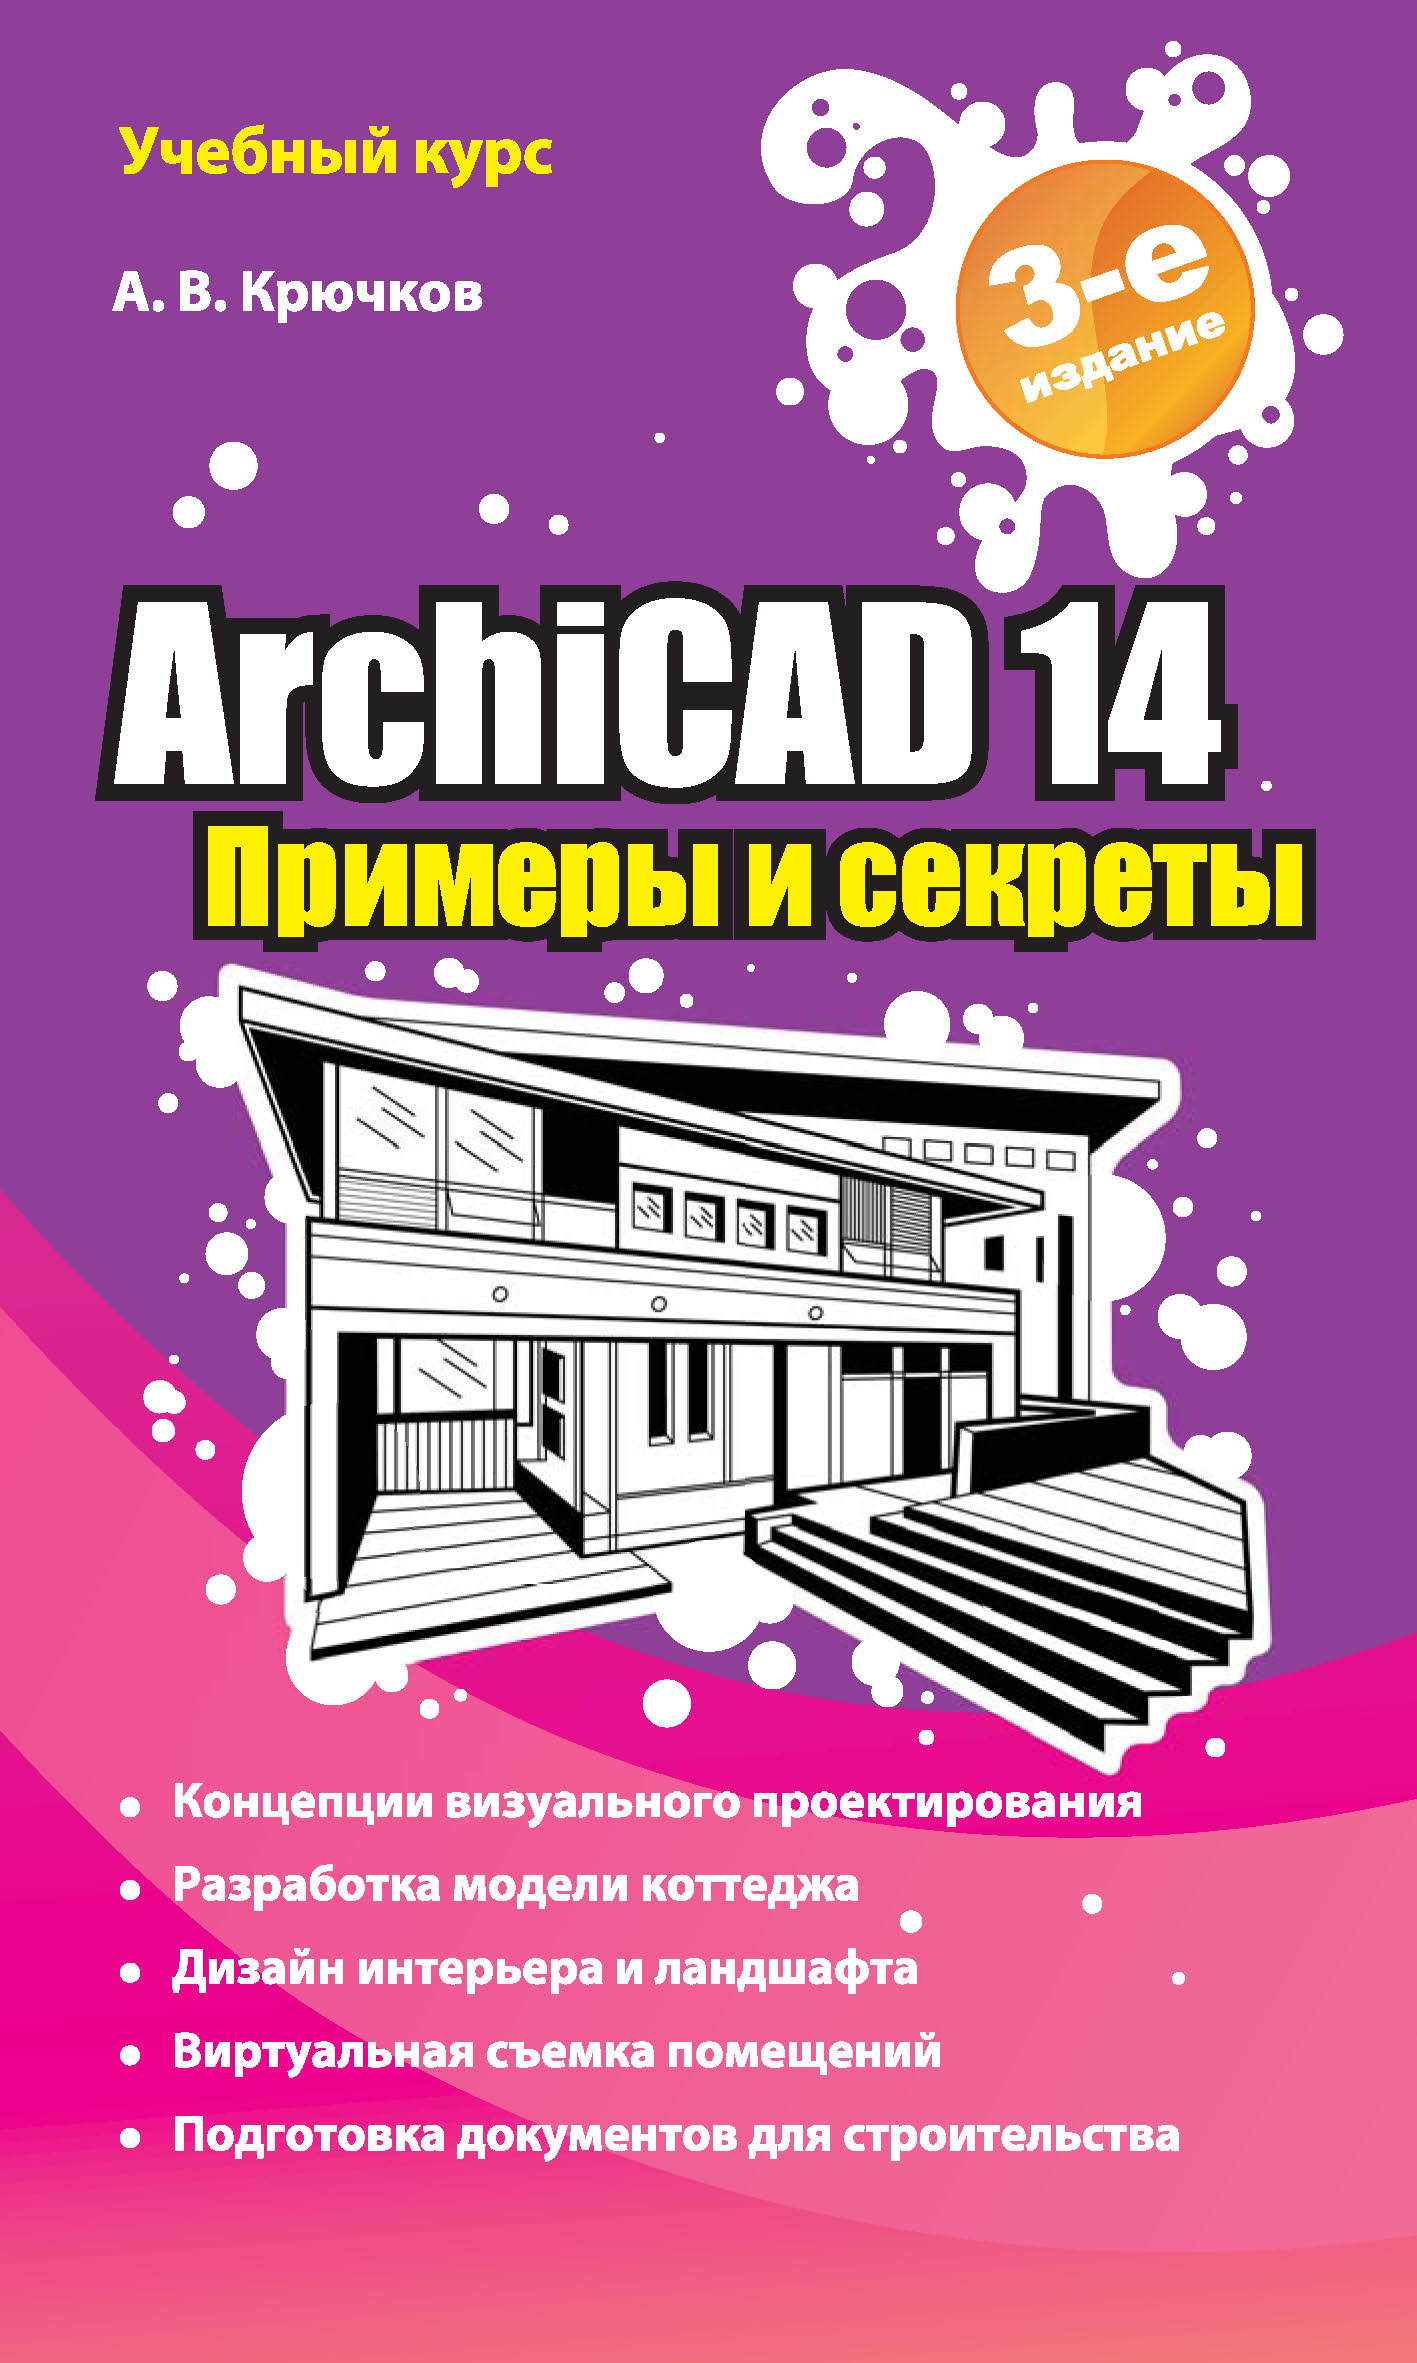 ArchiCAD 14.Примеры и секреты